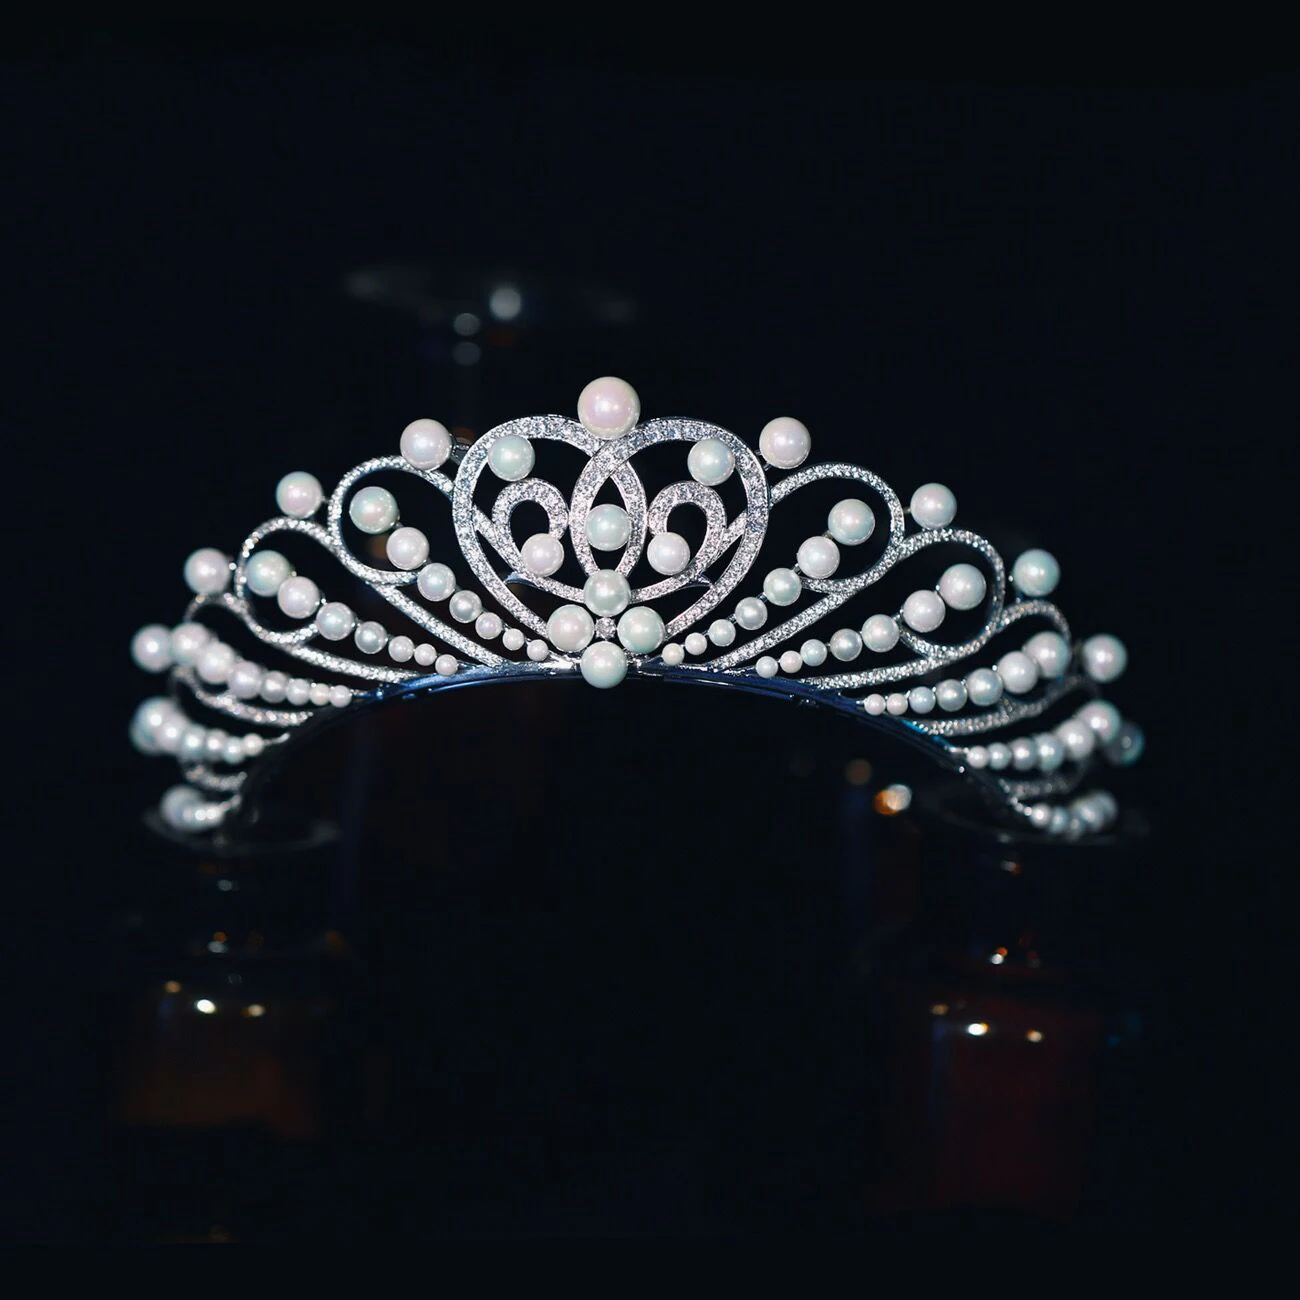 

European Pearls Princess Zircon Brides Crowns Tiaras Headpieces Crystal Bridal Headbands Wedding Hair Accessories